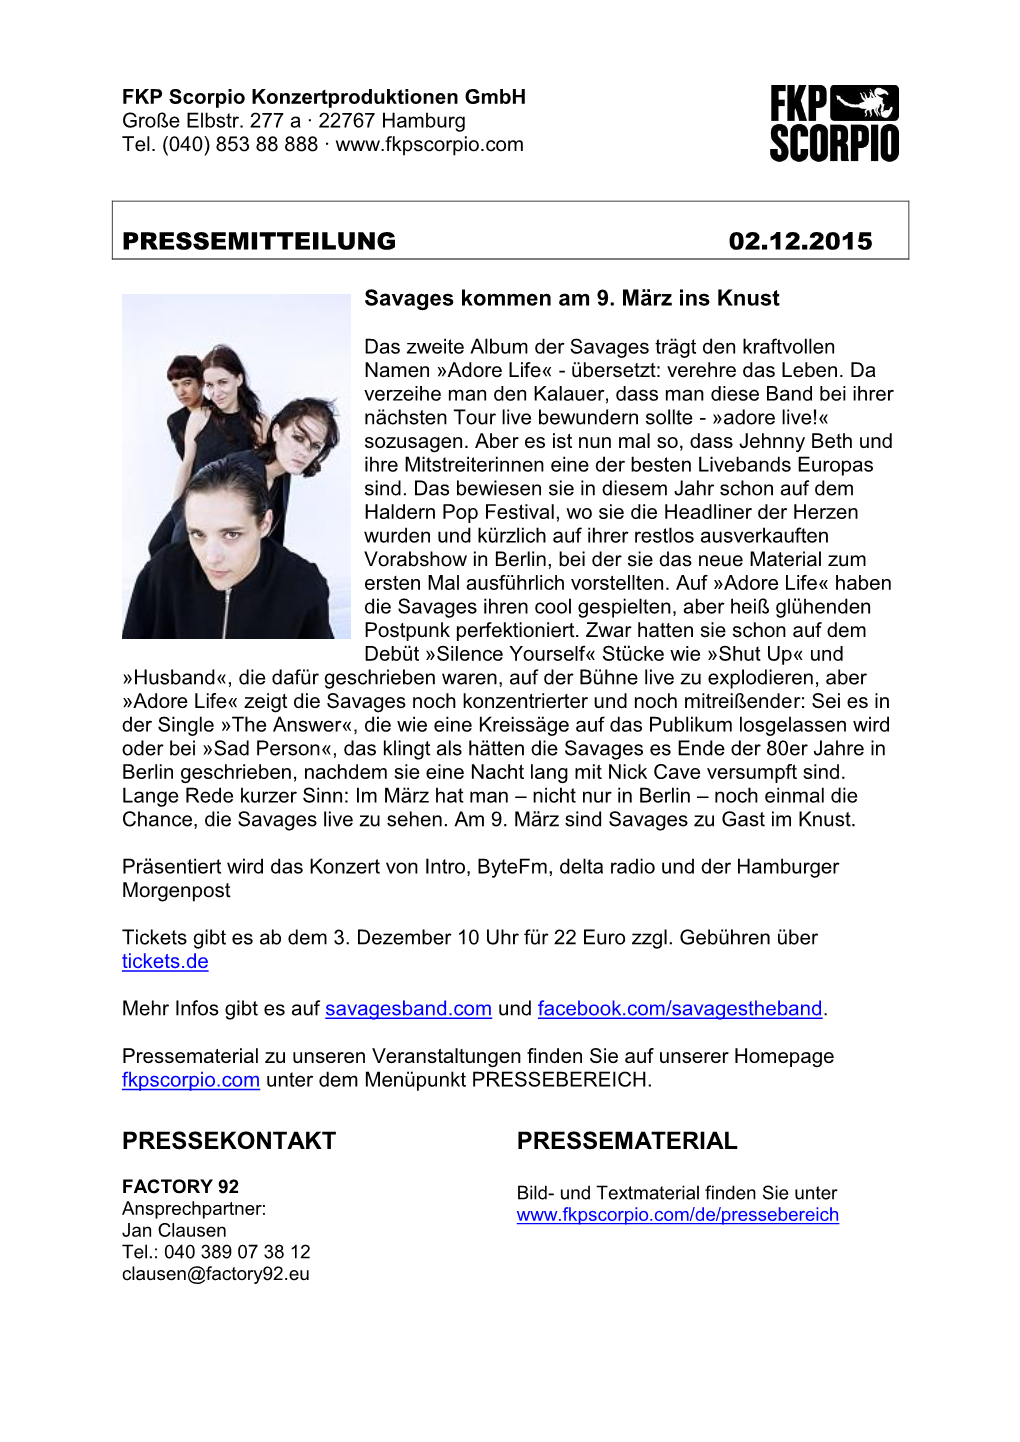 PM-SAVAGES-02.12.2015 PDF PRESSEMATERIAL Download